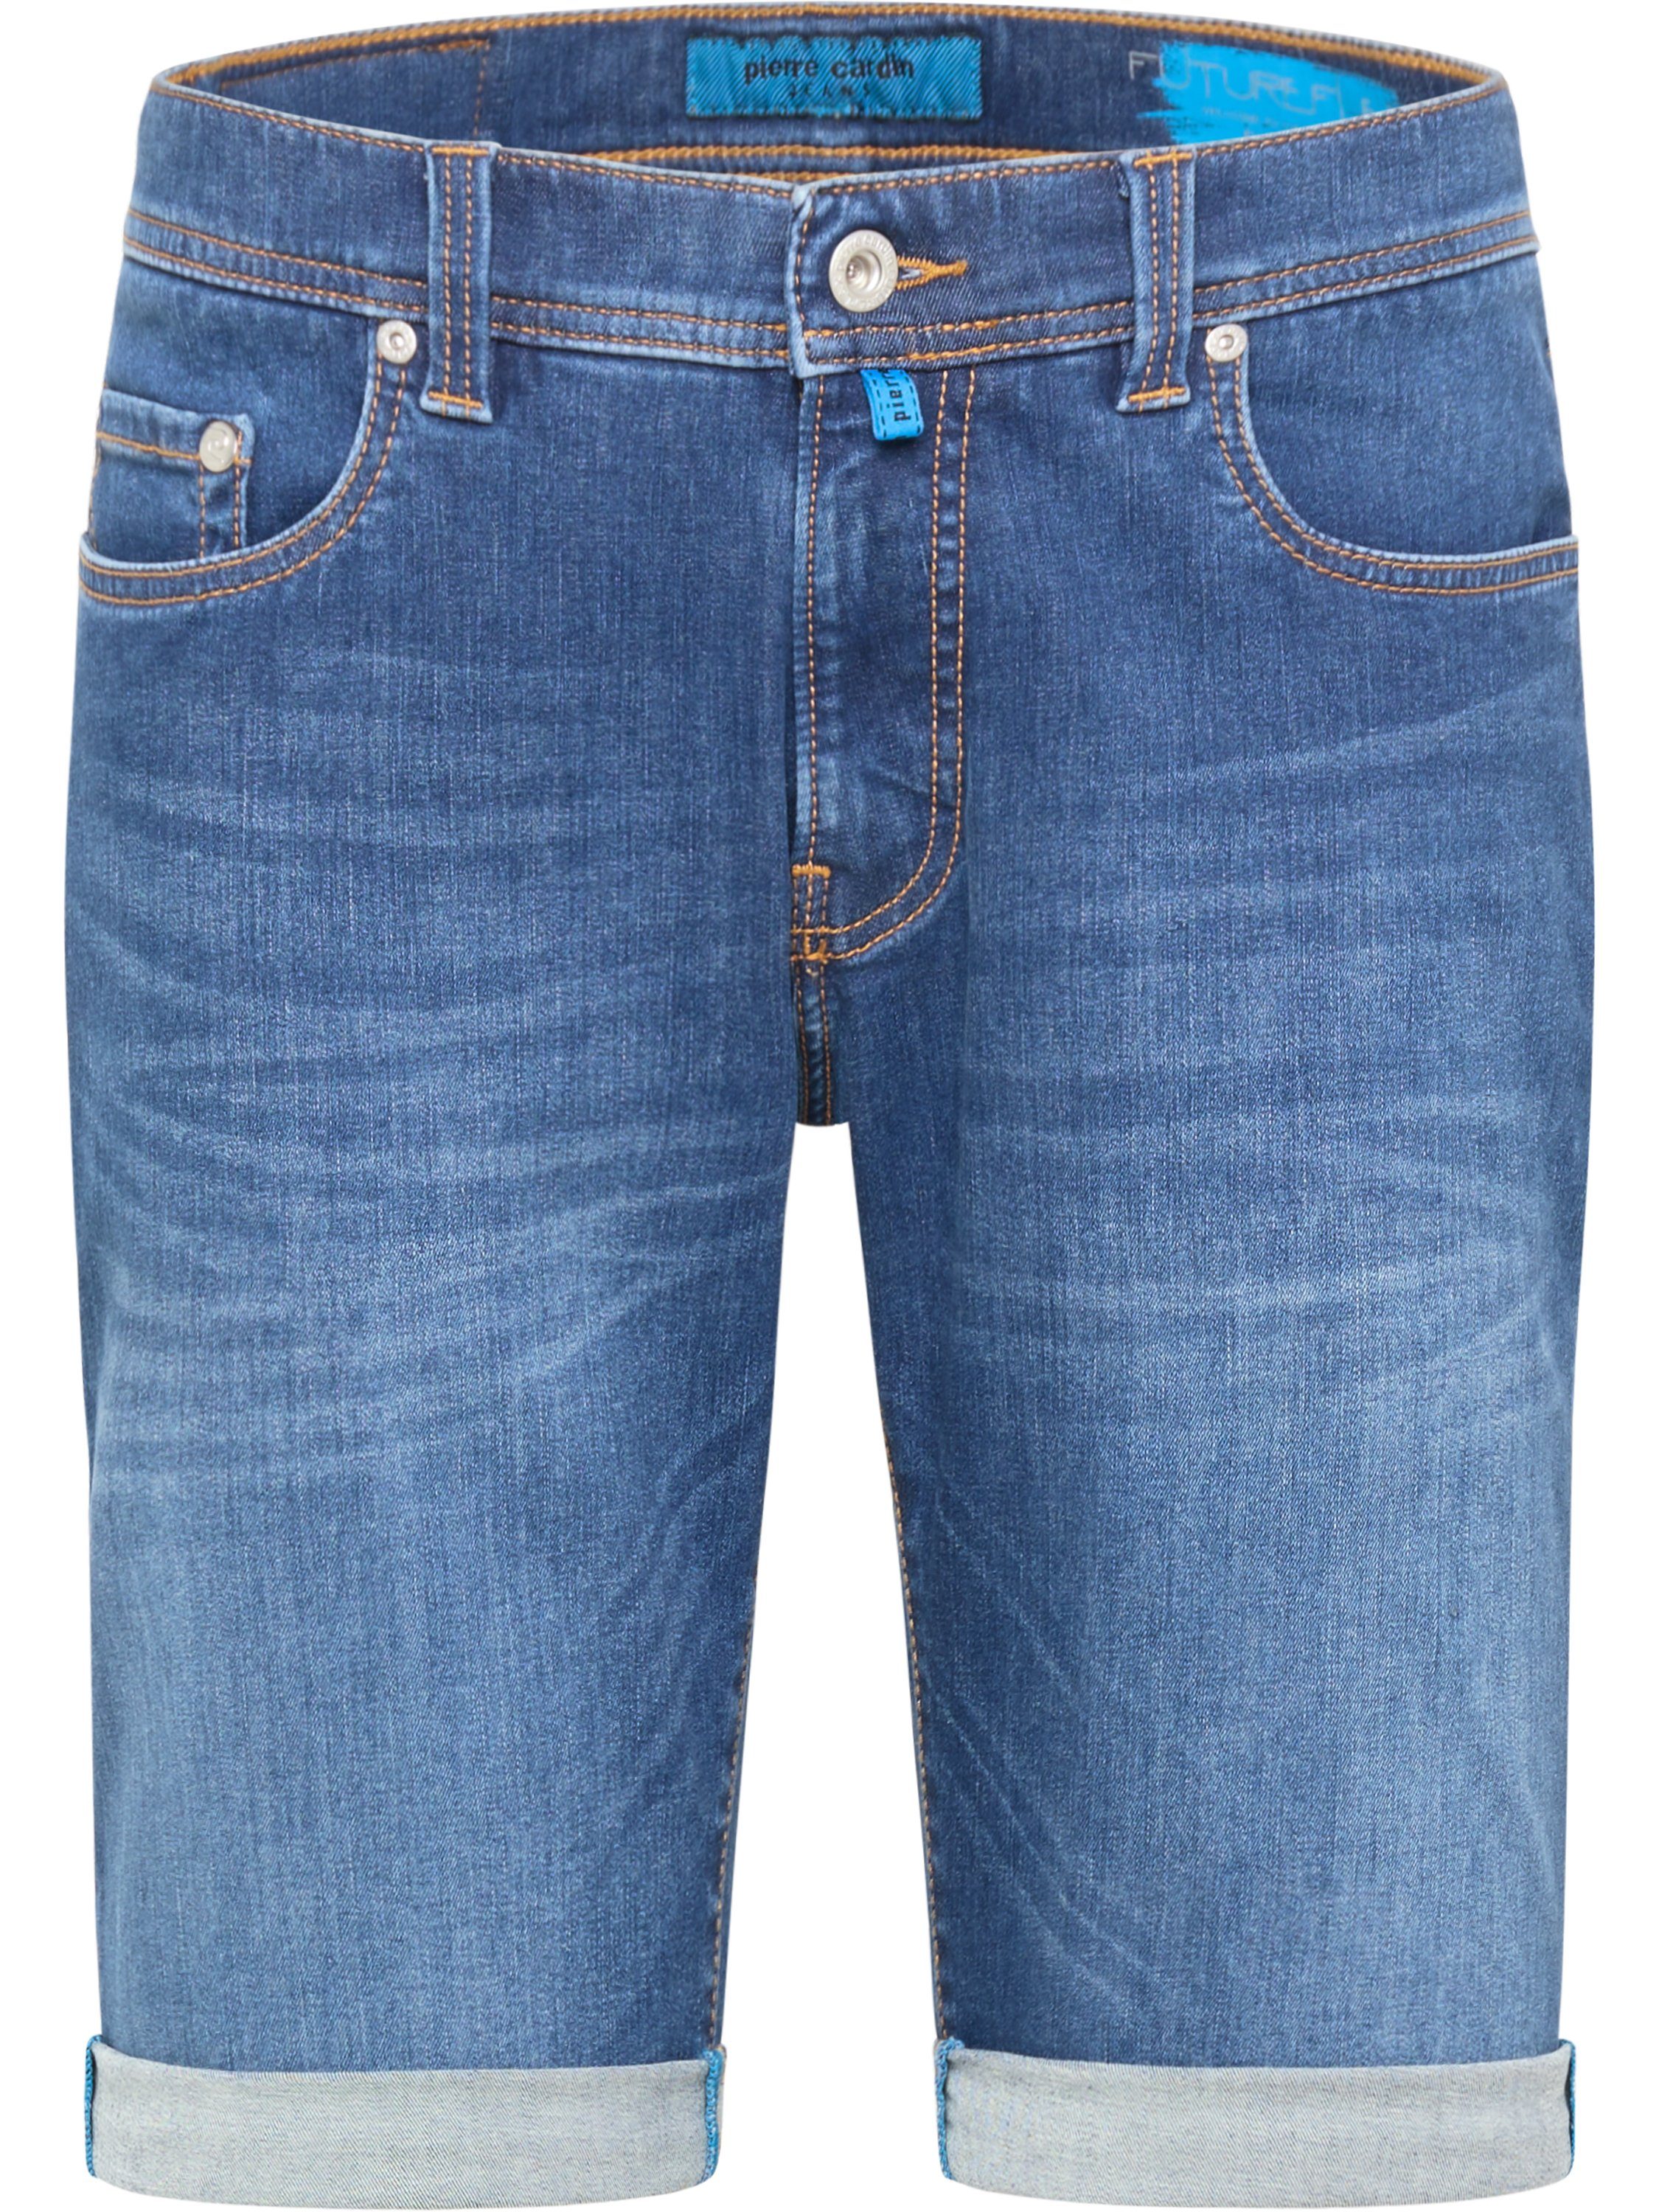 Pierre Cardin 5-Pocket-Jeans PIERRE CARDIN LYON FUTUREFLEX SHORTS blue denim 3452 8860.05 - Inch-Gr